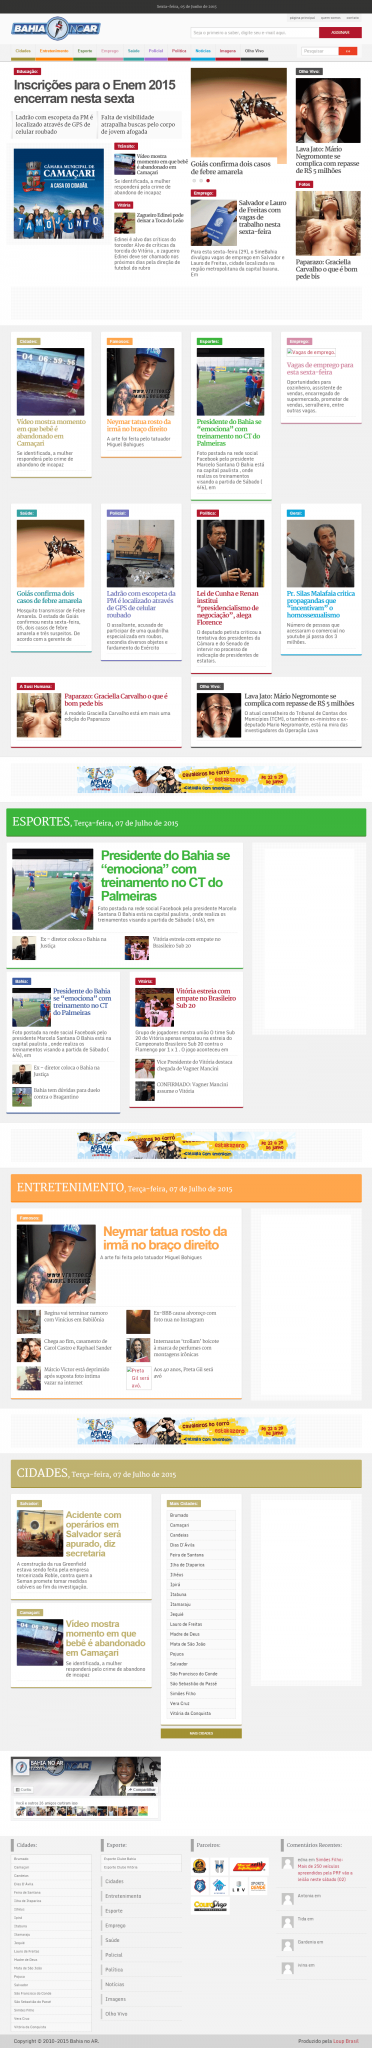 Confira imagem da página principal do site bahianoar.com em 2015.